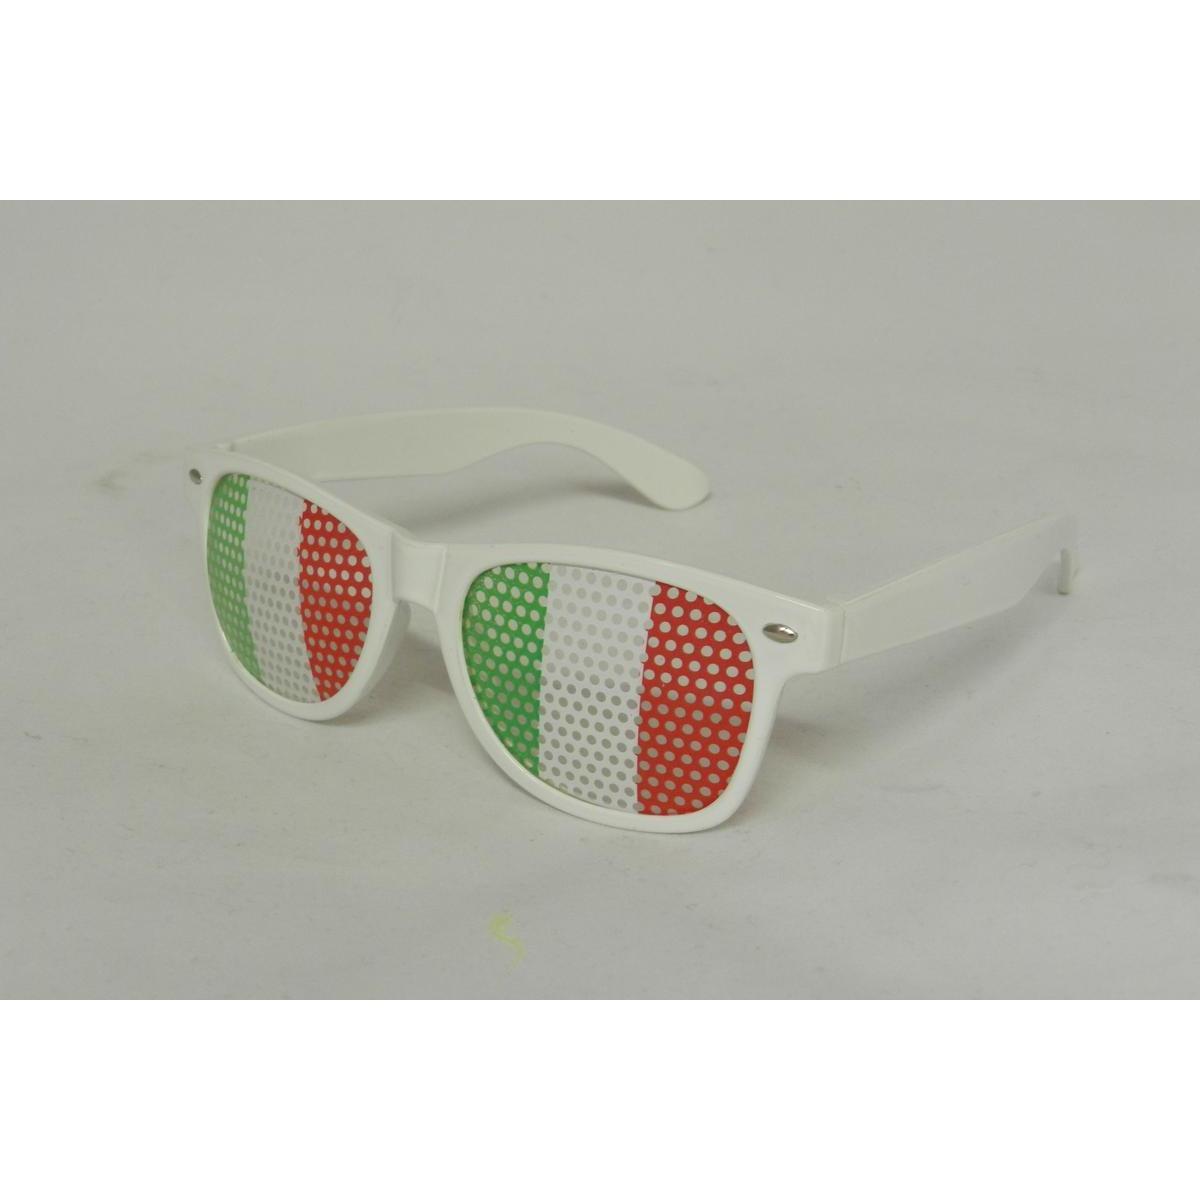 Lunettes supporter de l'Italie - 15 x 14.4 x 6.6 cm - Vert, blanc, rouge